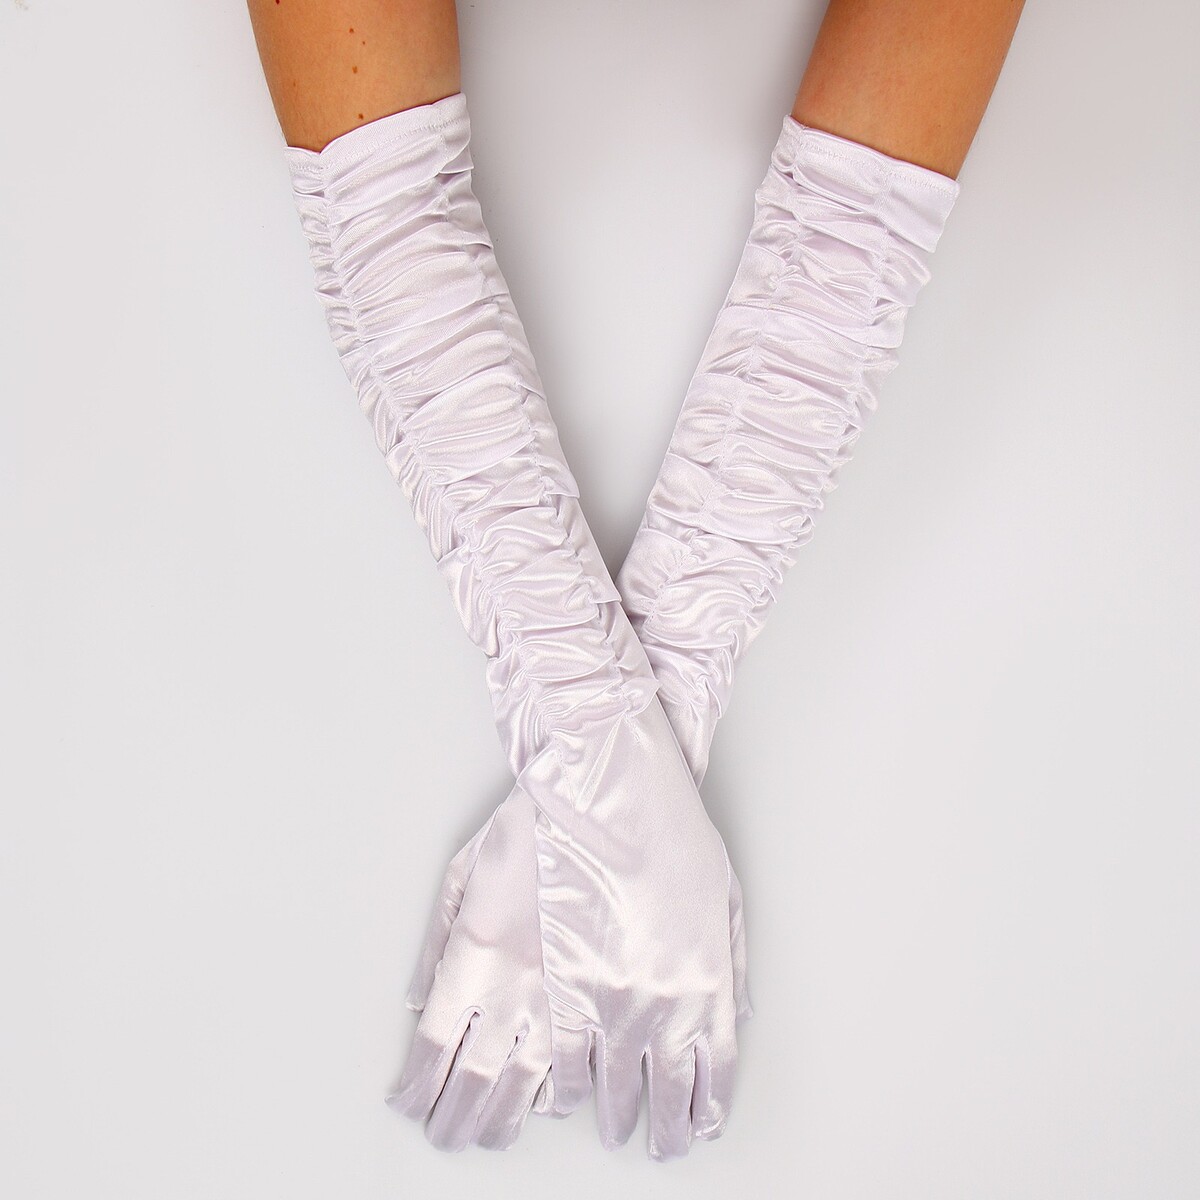 Карнавальный аксессуар - перчатки со сборкой, цвет белый карнавальный аксессуар перчатки нарукавники белый